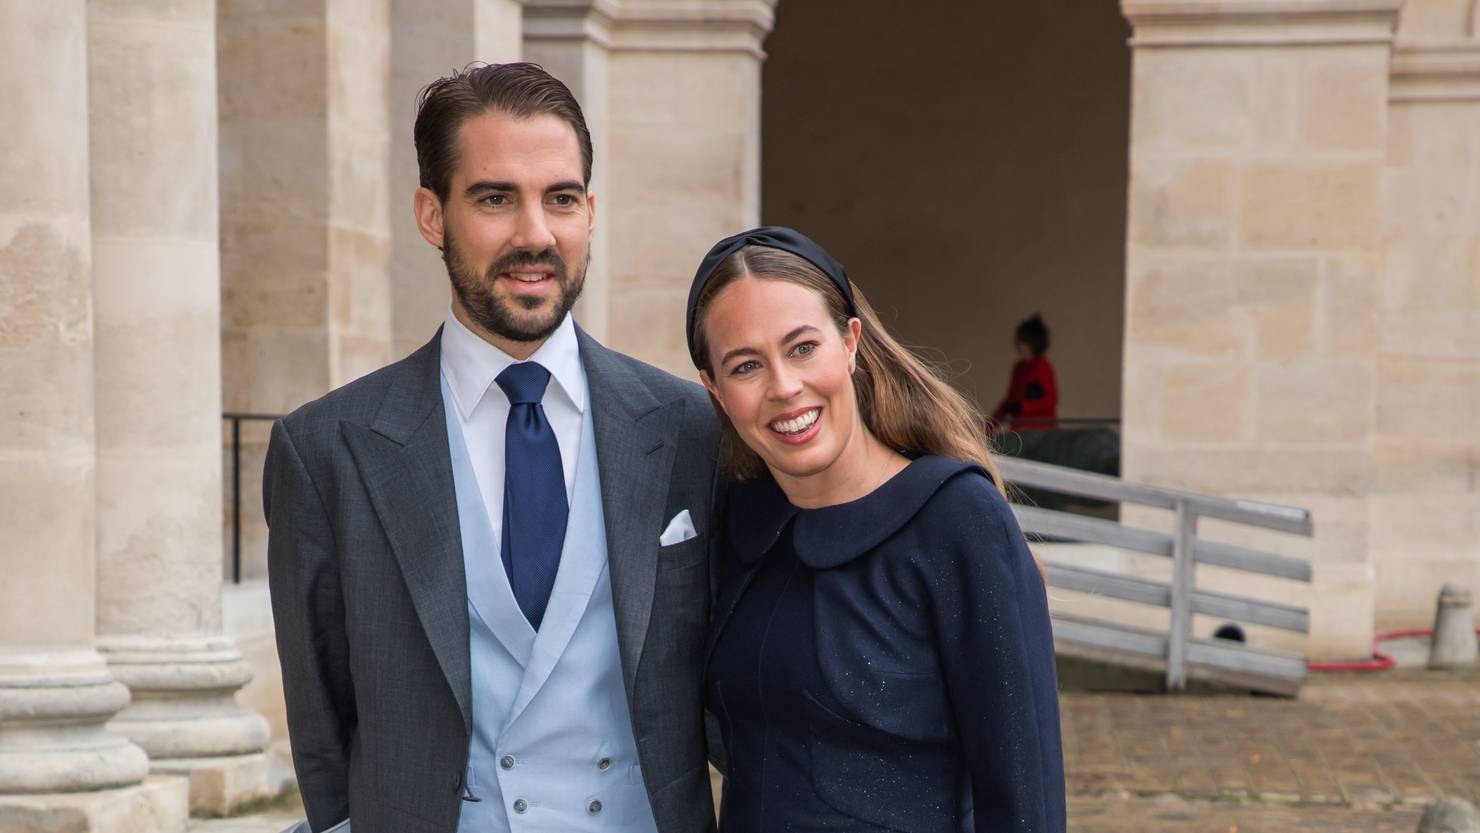 Baarerin verlobt sich mit griechischem Prinzen - PilatusToday